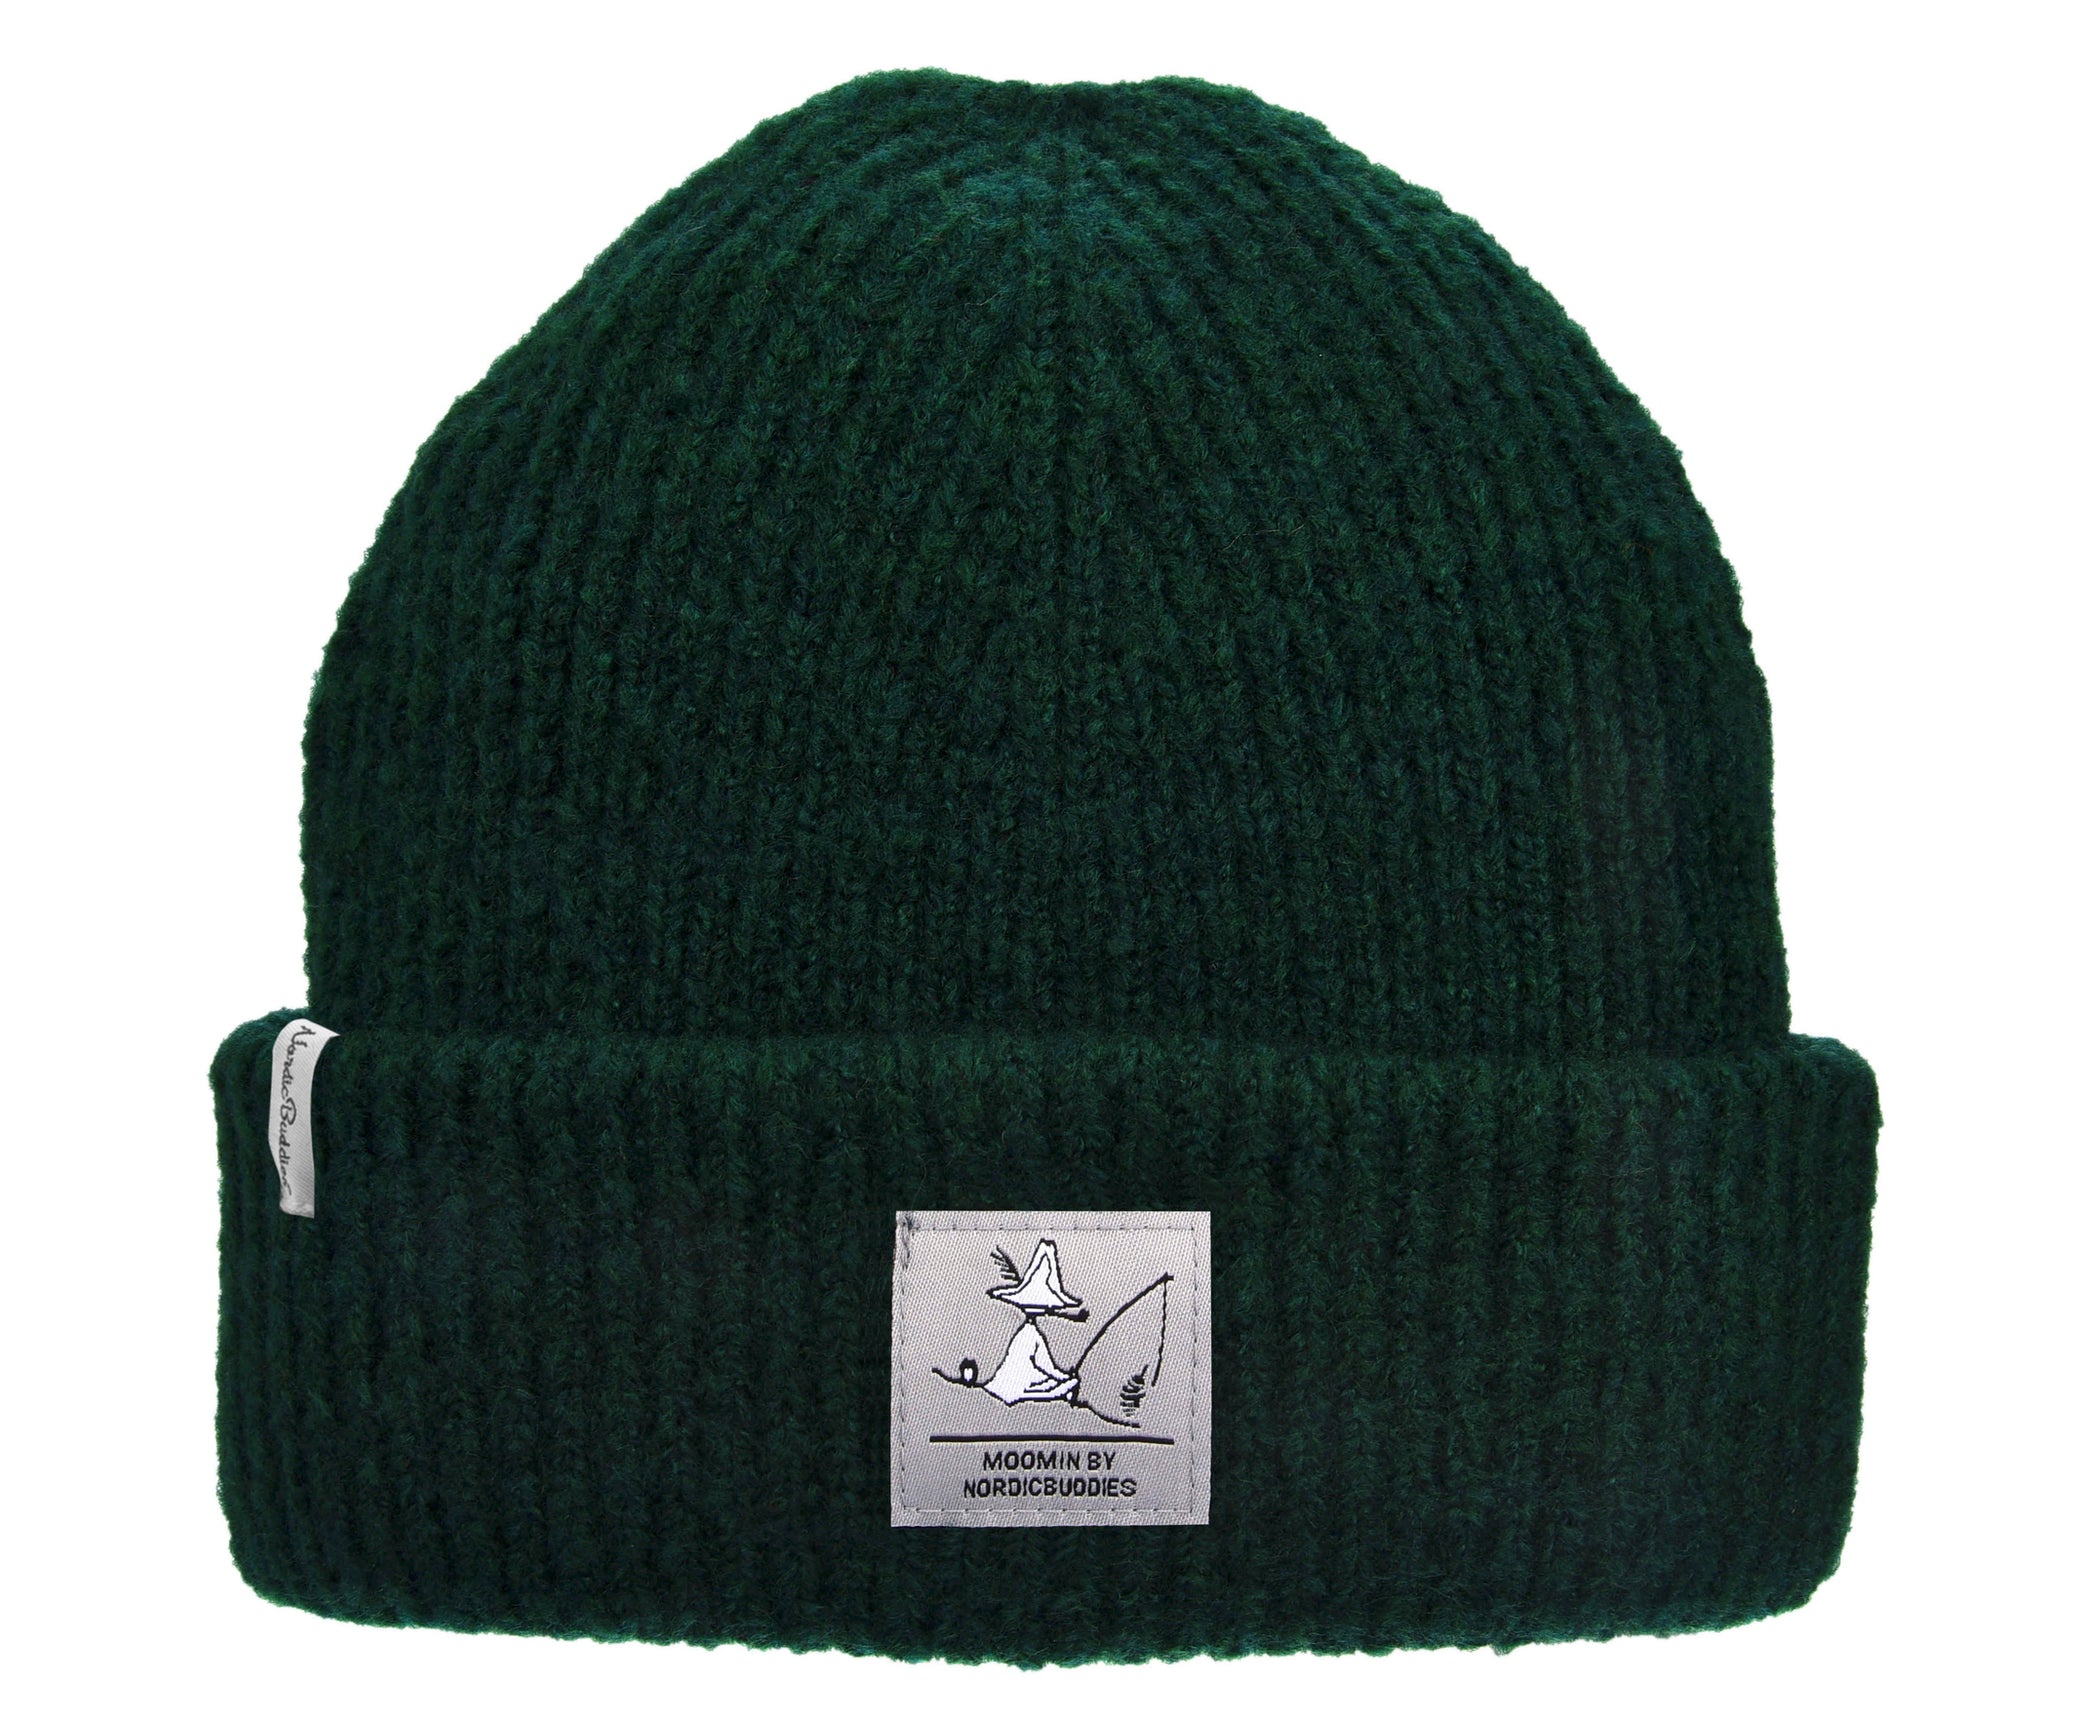 Snufkin Winter Hat Beanie Adult - Green